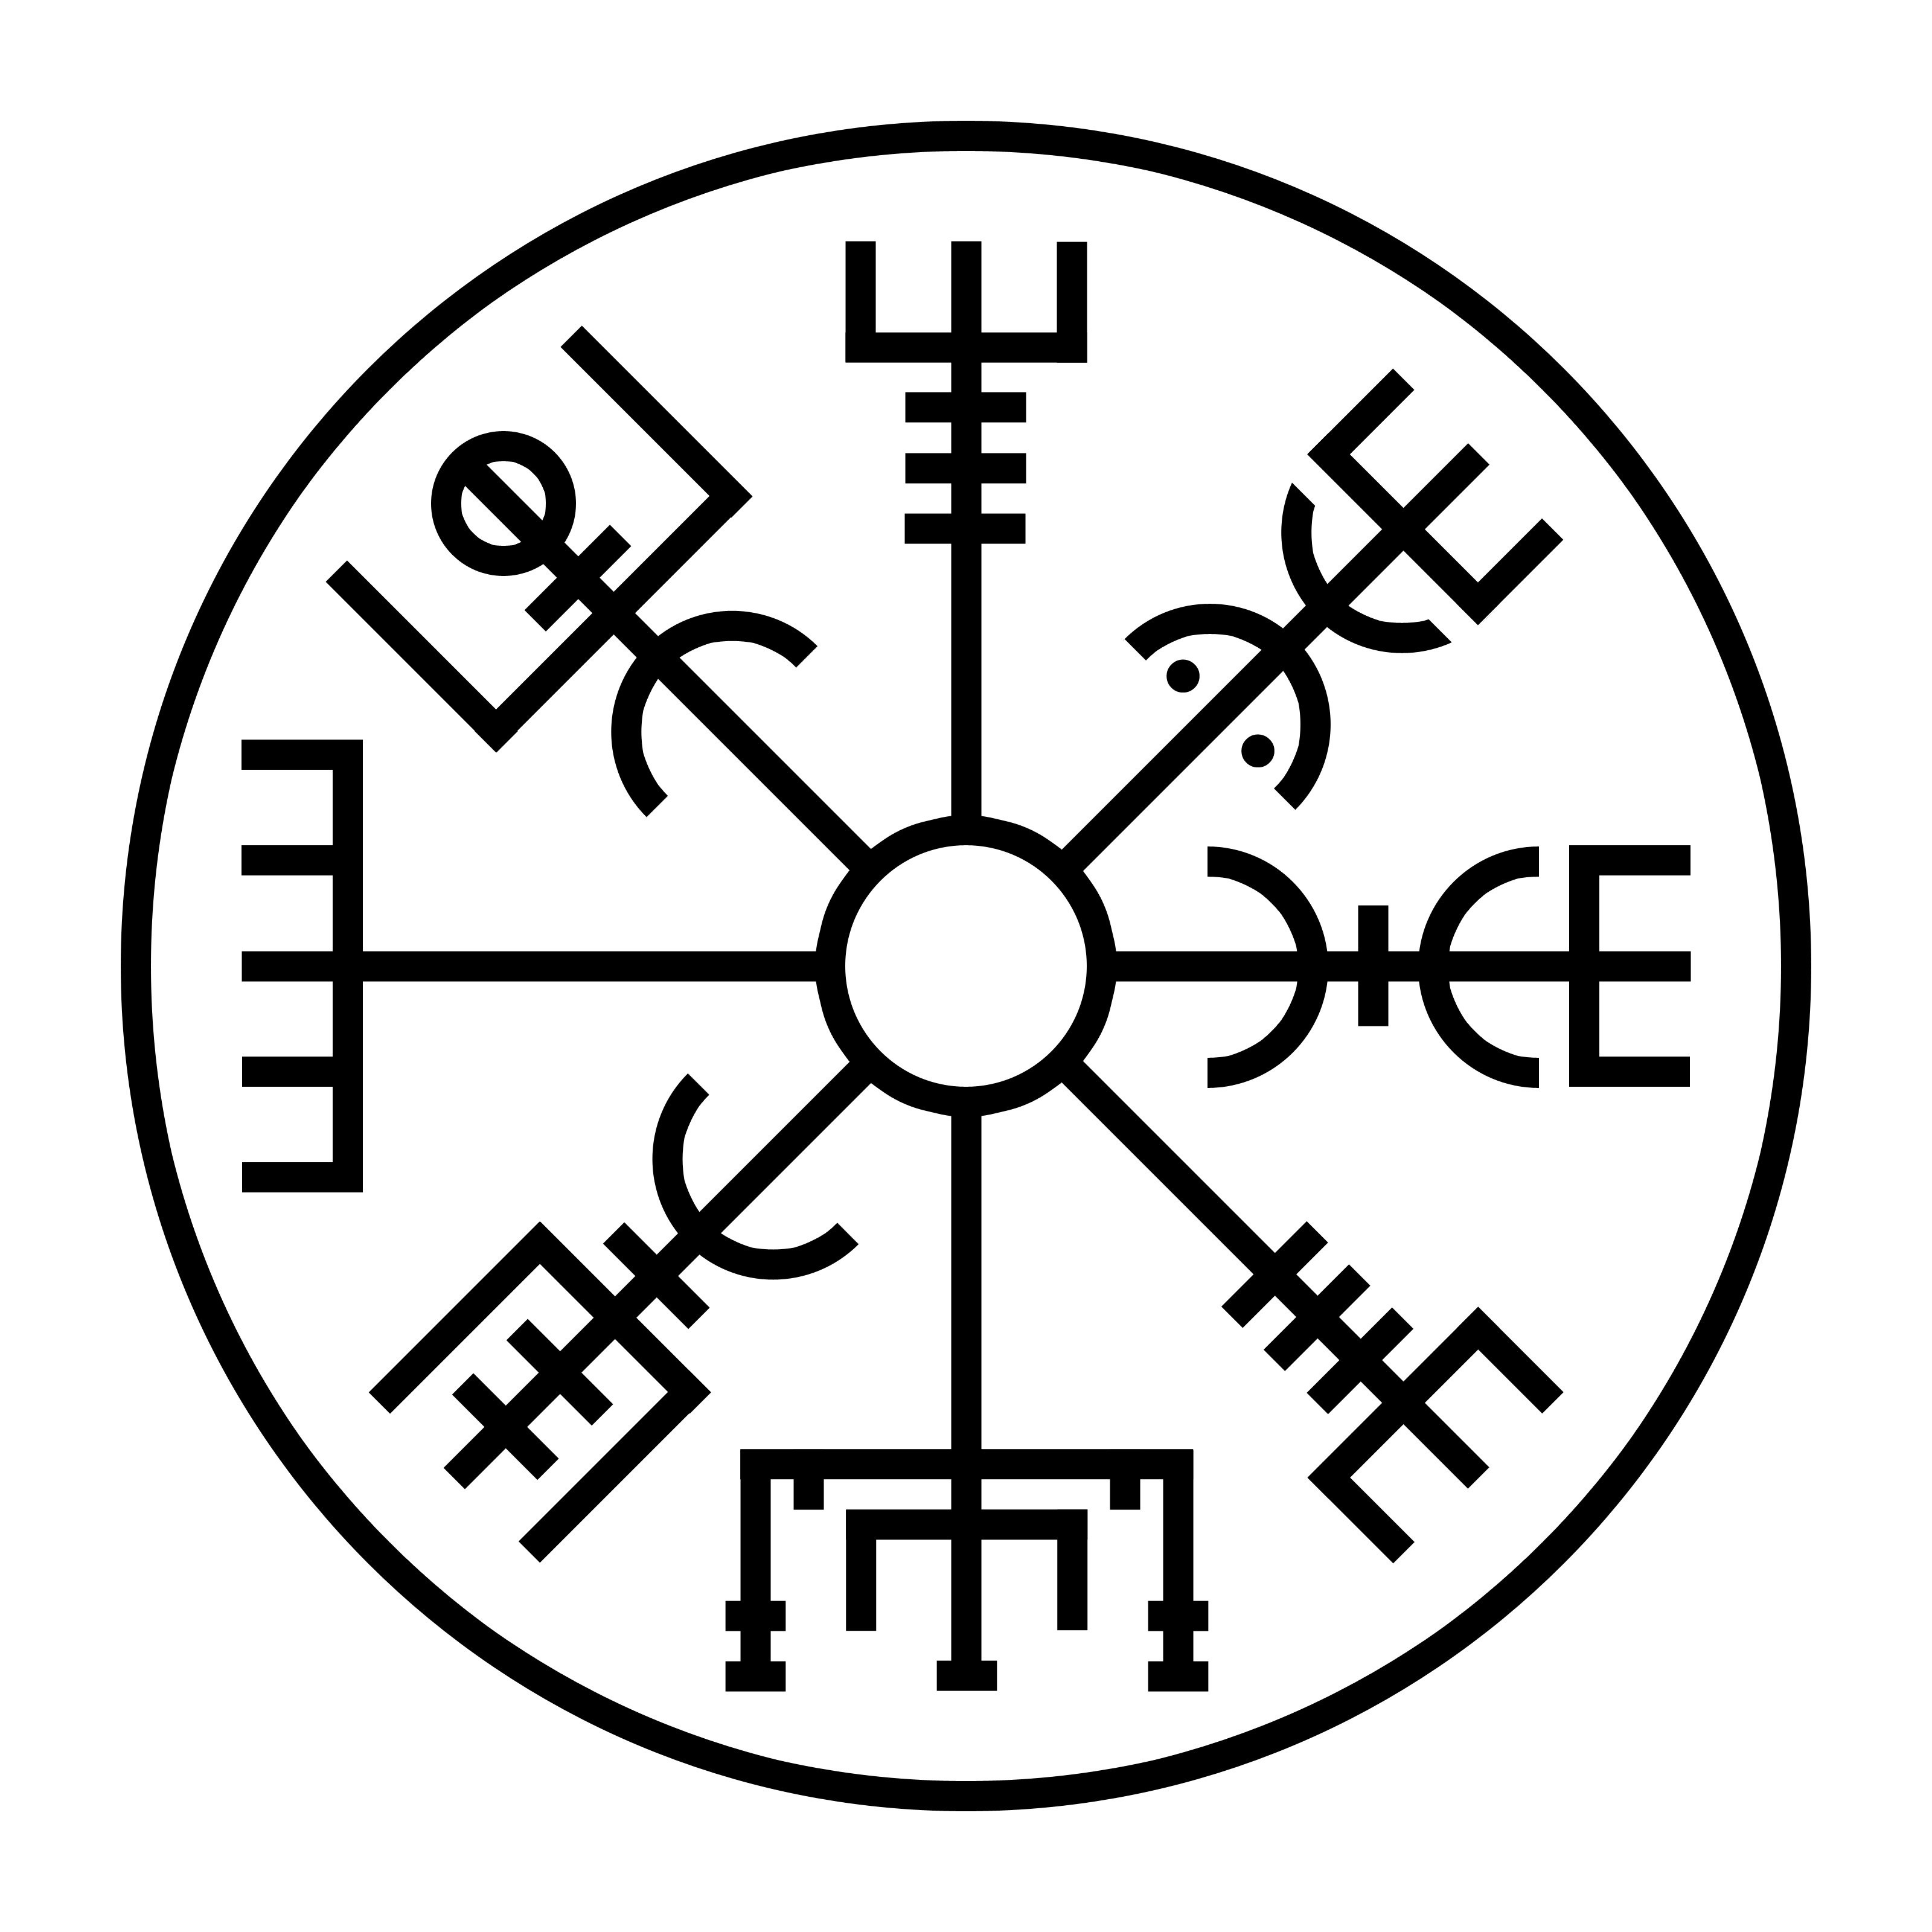 Вегвизер. Рунический компас вегвизир. Вегвизир рунический талисман. Руна викингов вегвизир. Скандинавские руны вегвизир символ.